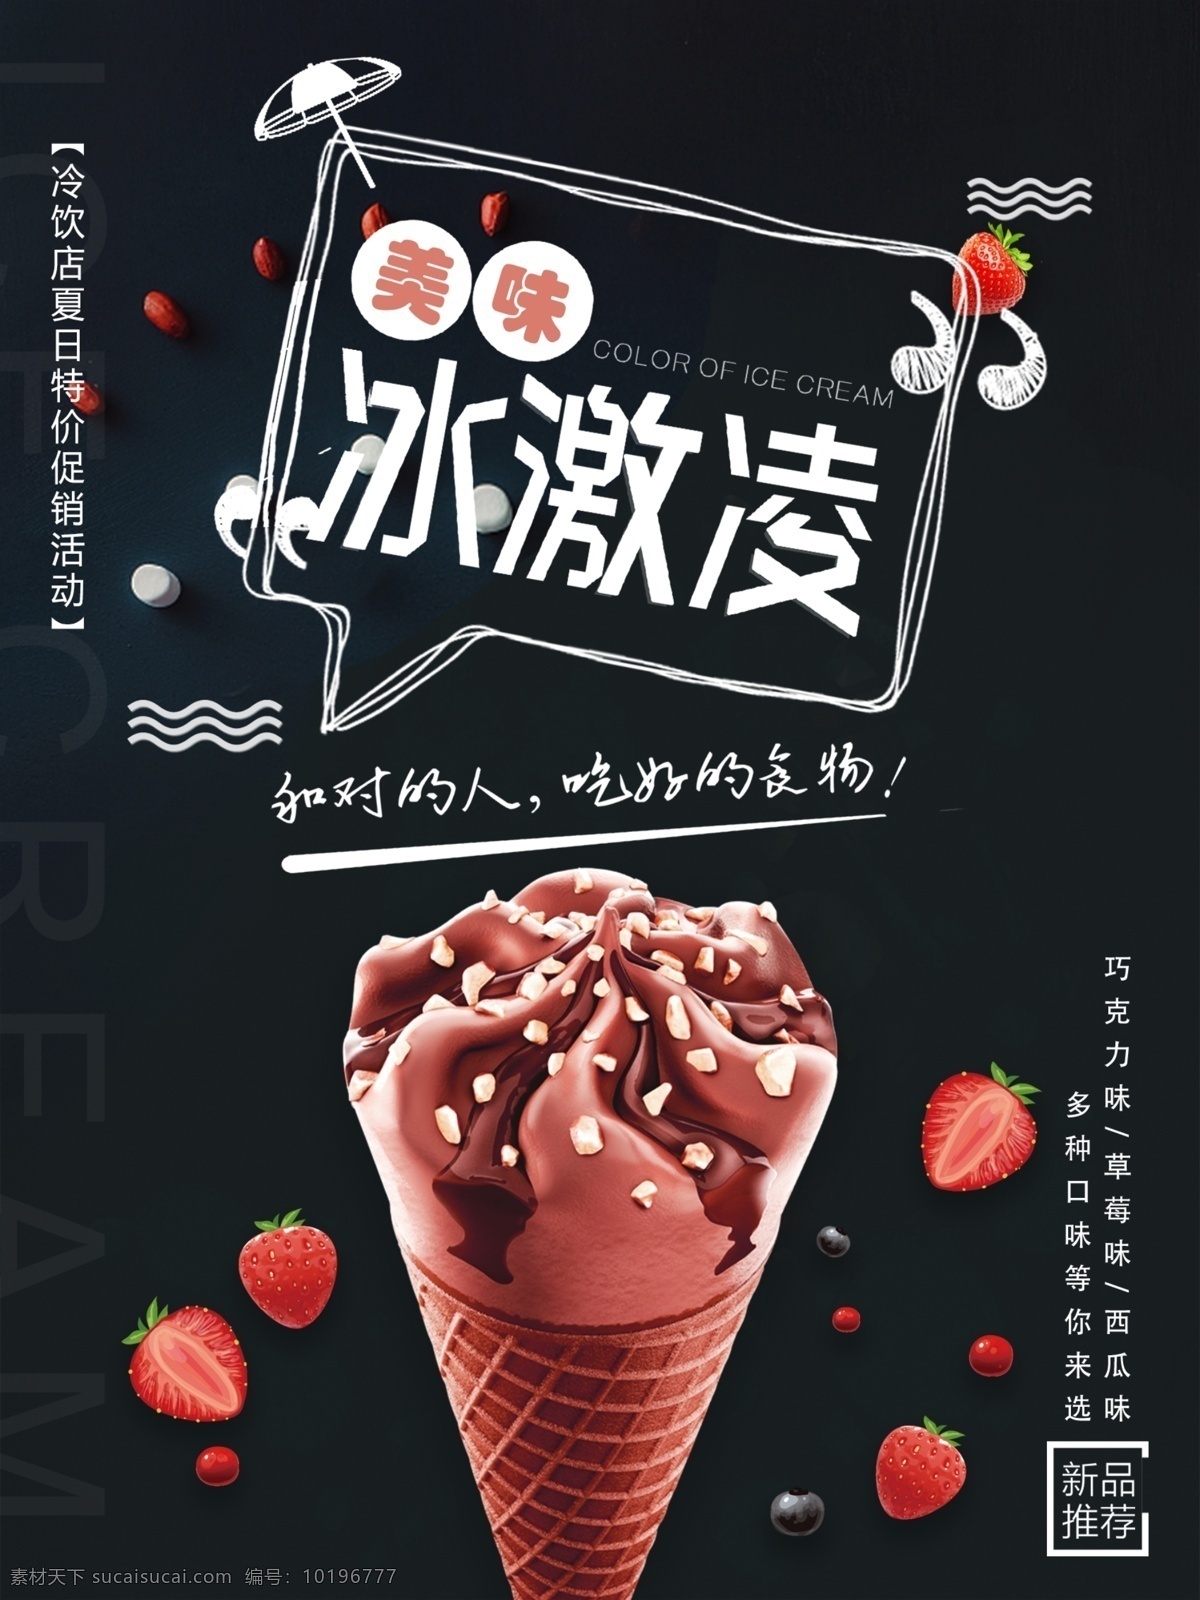 冰 爽 夏日 美味 冰激凌 美食 海报 冰爽 新品推荐 巧克力 奶油 草莓冰激凌 美味冰激凌